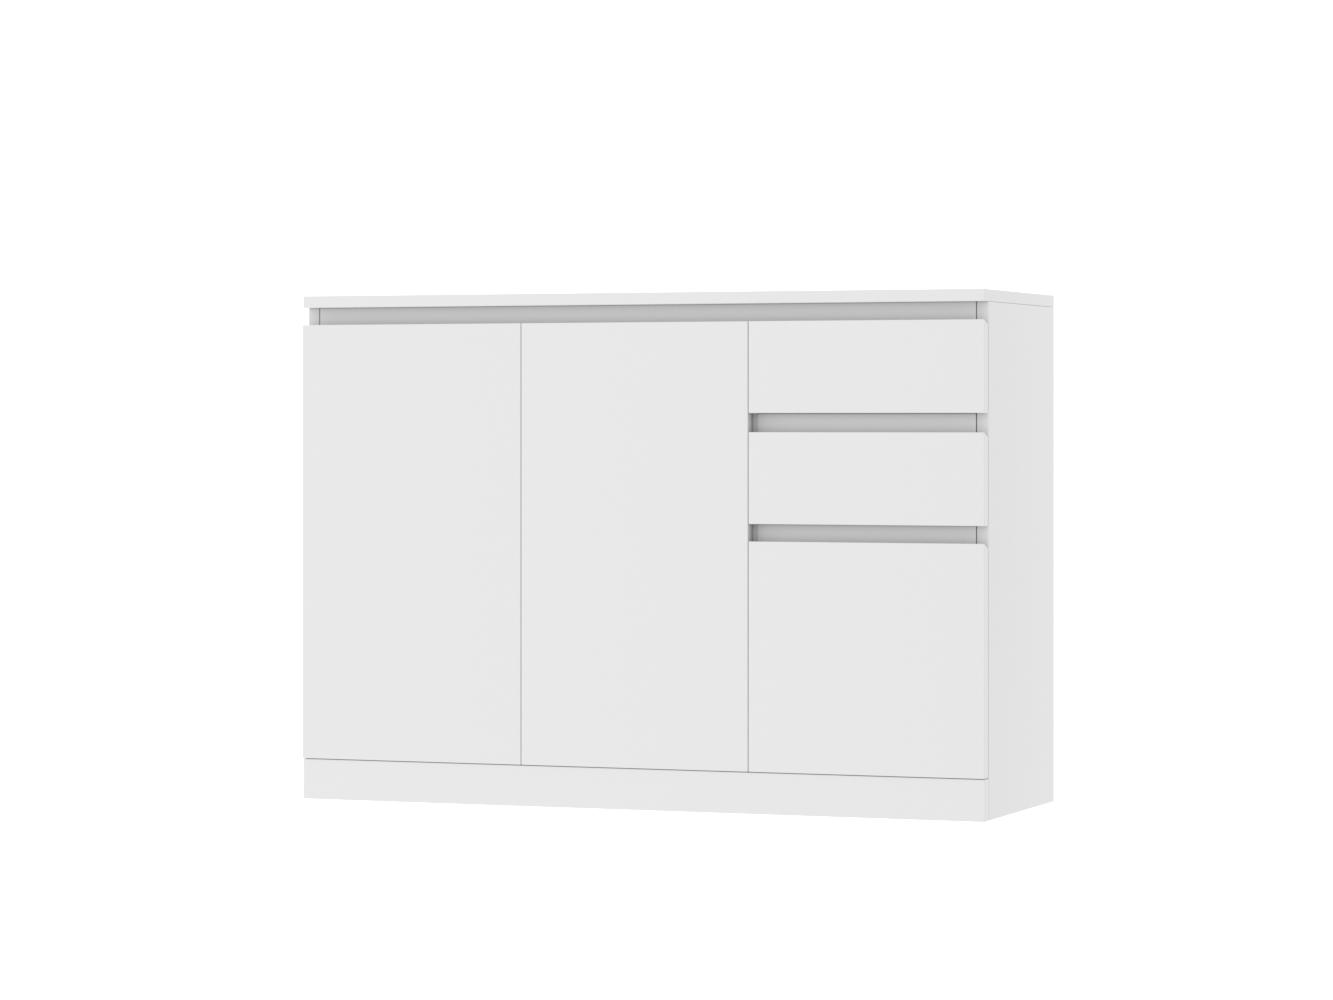 Комод Мальм 22 white ИКЕА (IKEA) изображение товара